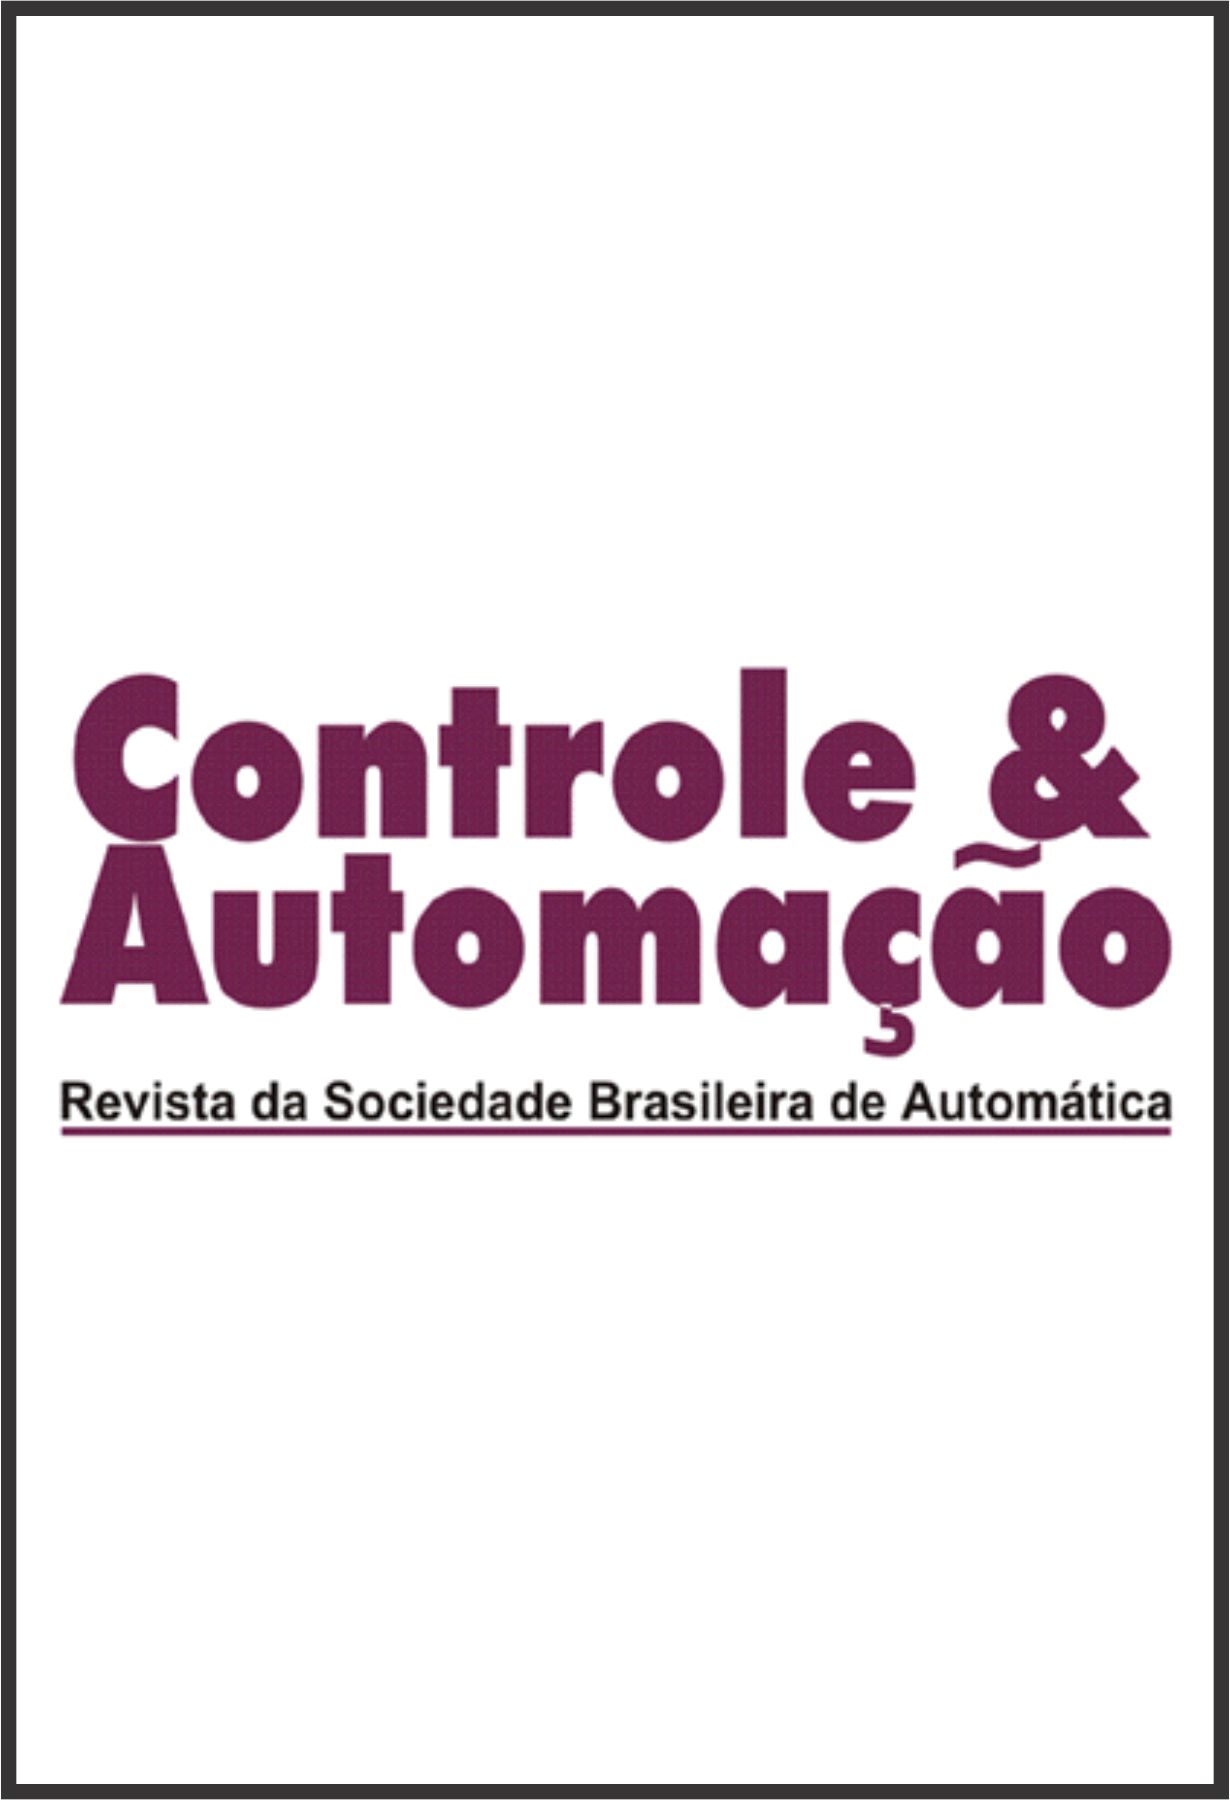 Capa: Controle & Automação – Revista da Sociedade Brasileira de Automática